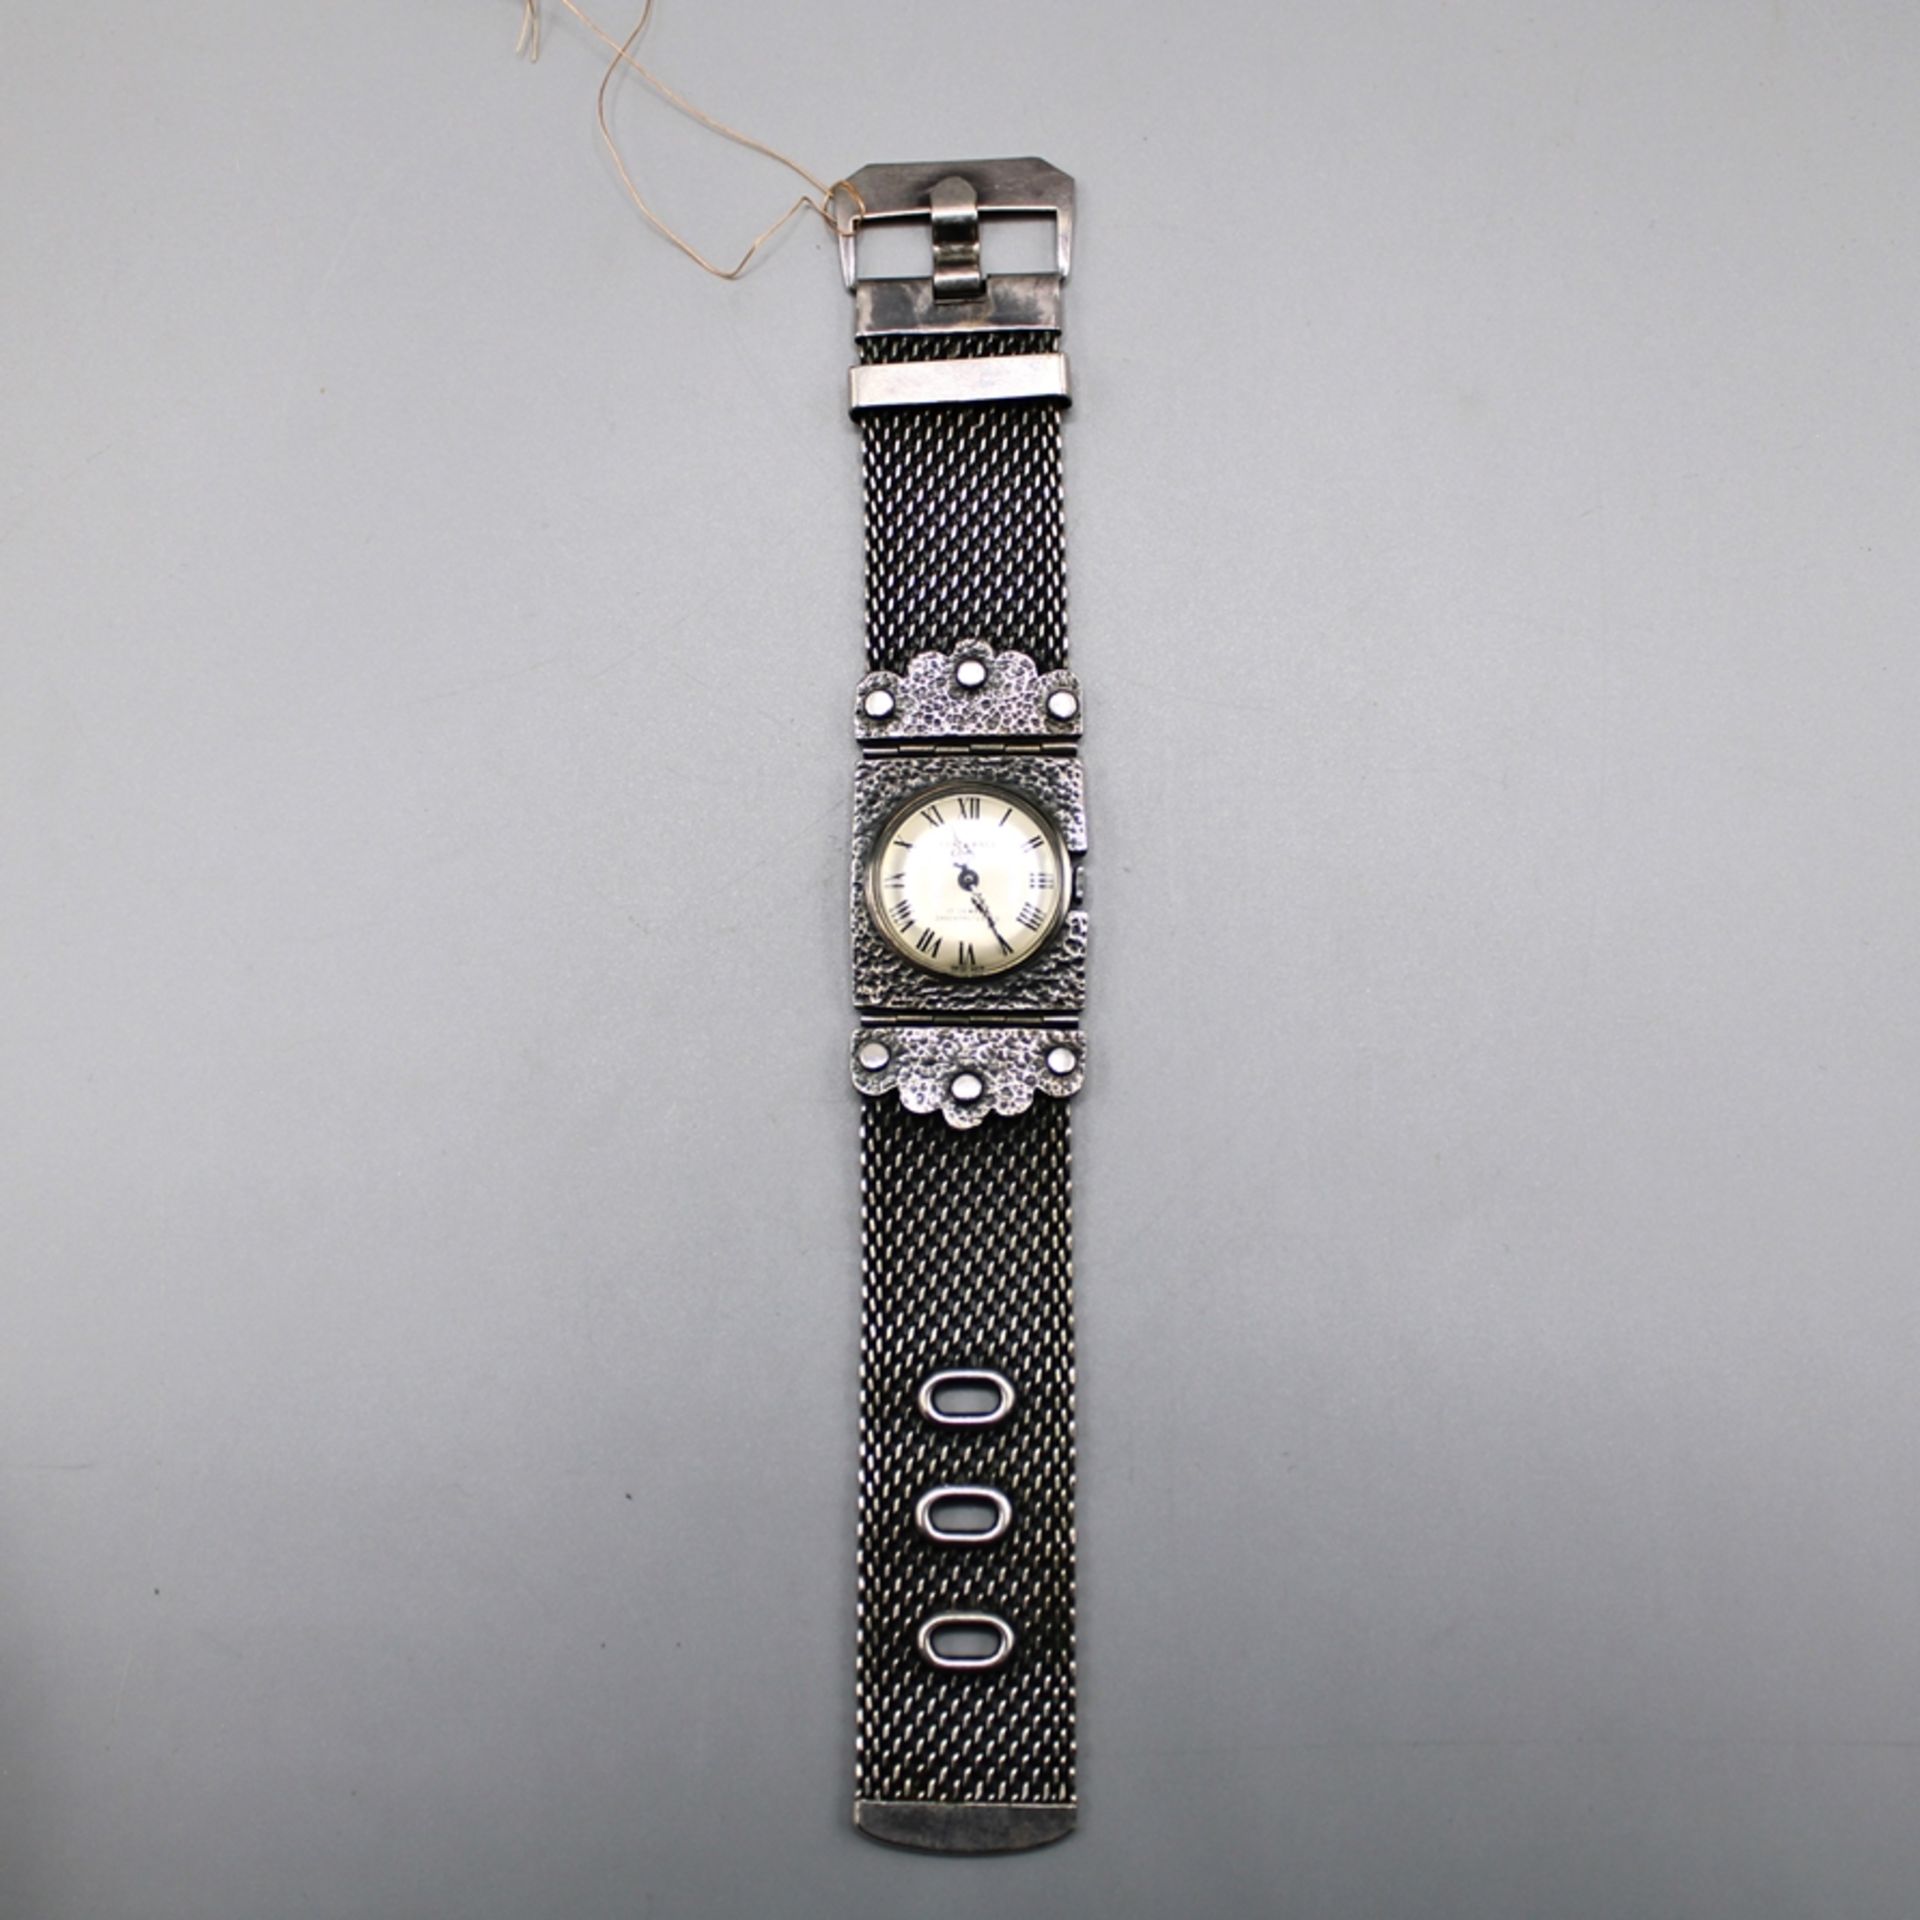 Corocraft Damenuhr Handaufzug, die Uhr läuft an (Ganggenauigkeit u. Laufdauer nicht geprüft)